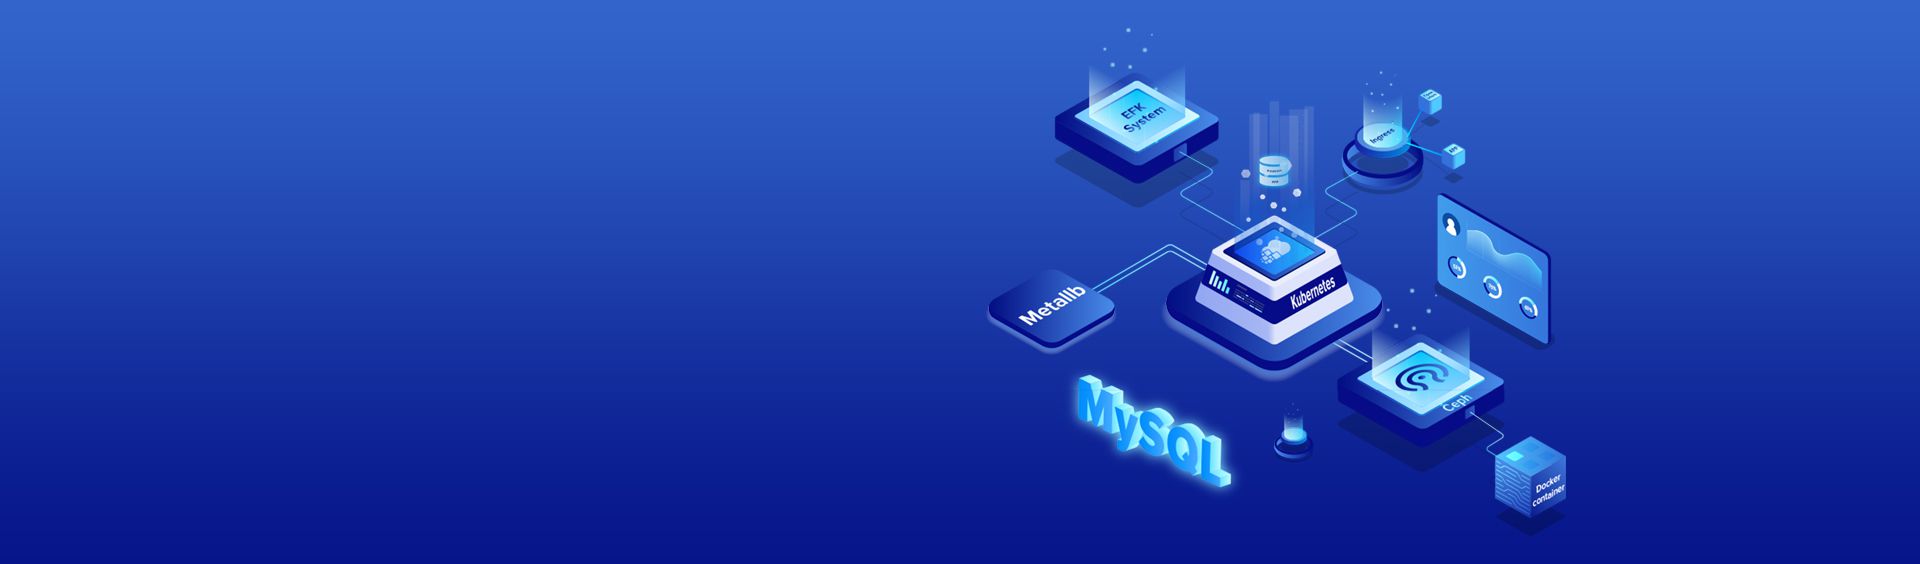 MySQL Server Hosting, Managed MySQL Database Server Host